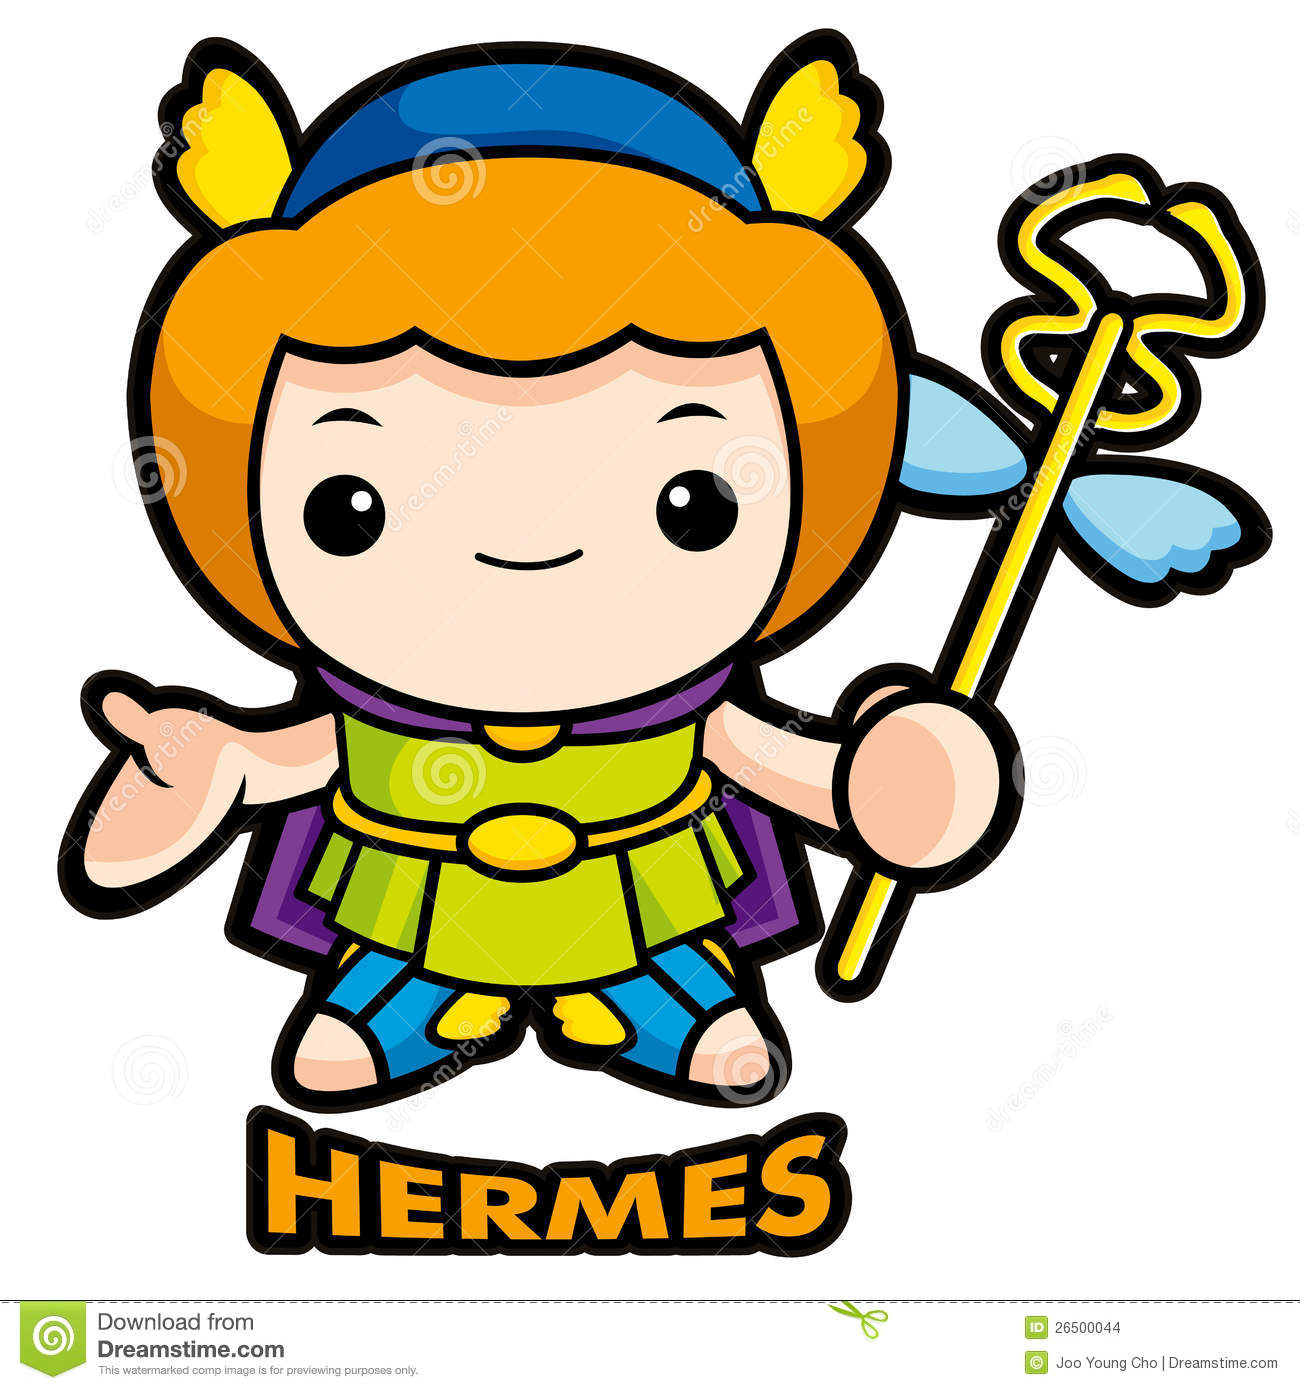 Hermes Clipart.